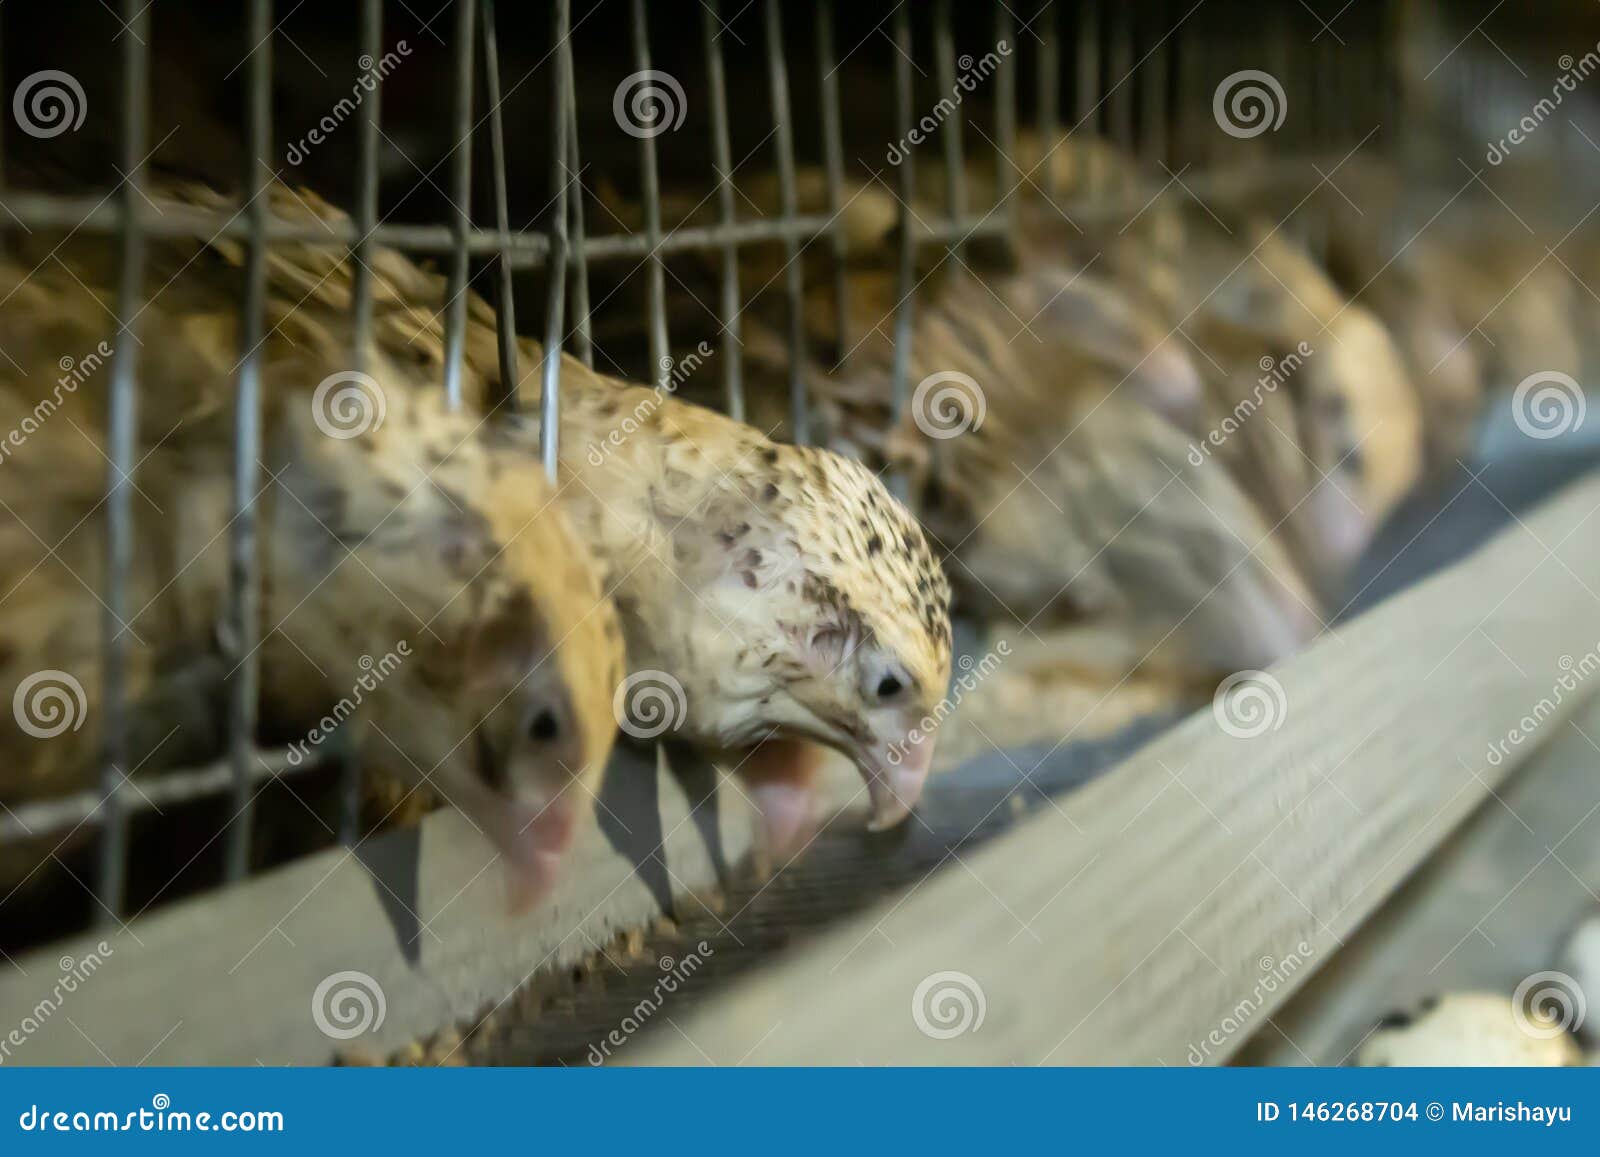 female quails peck feed on the farm